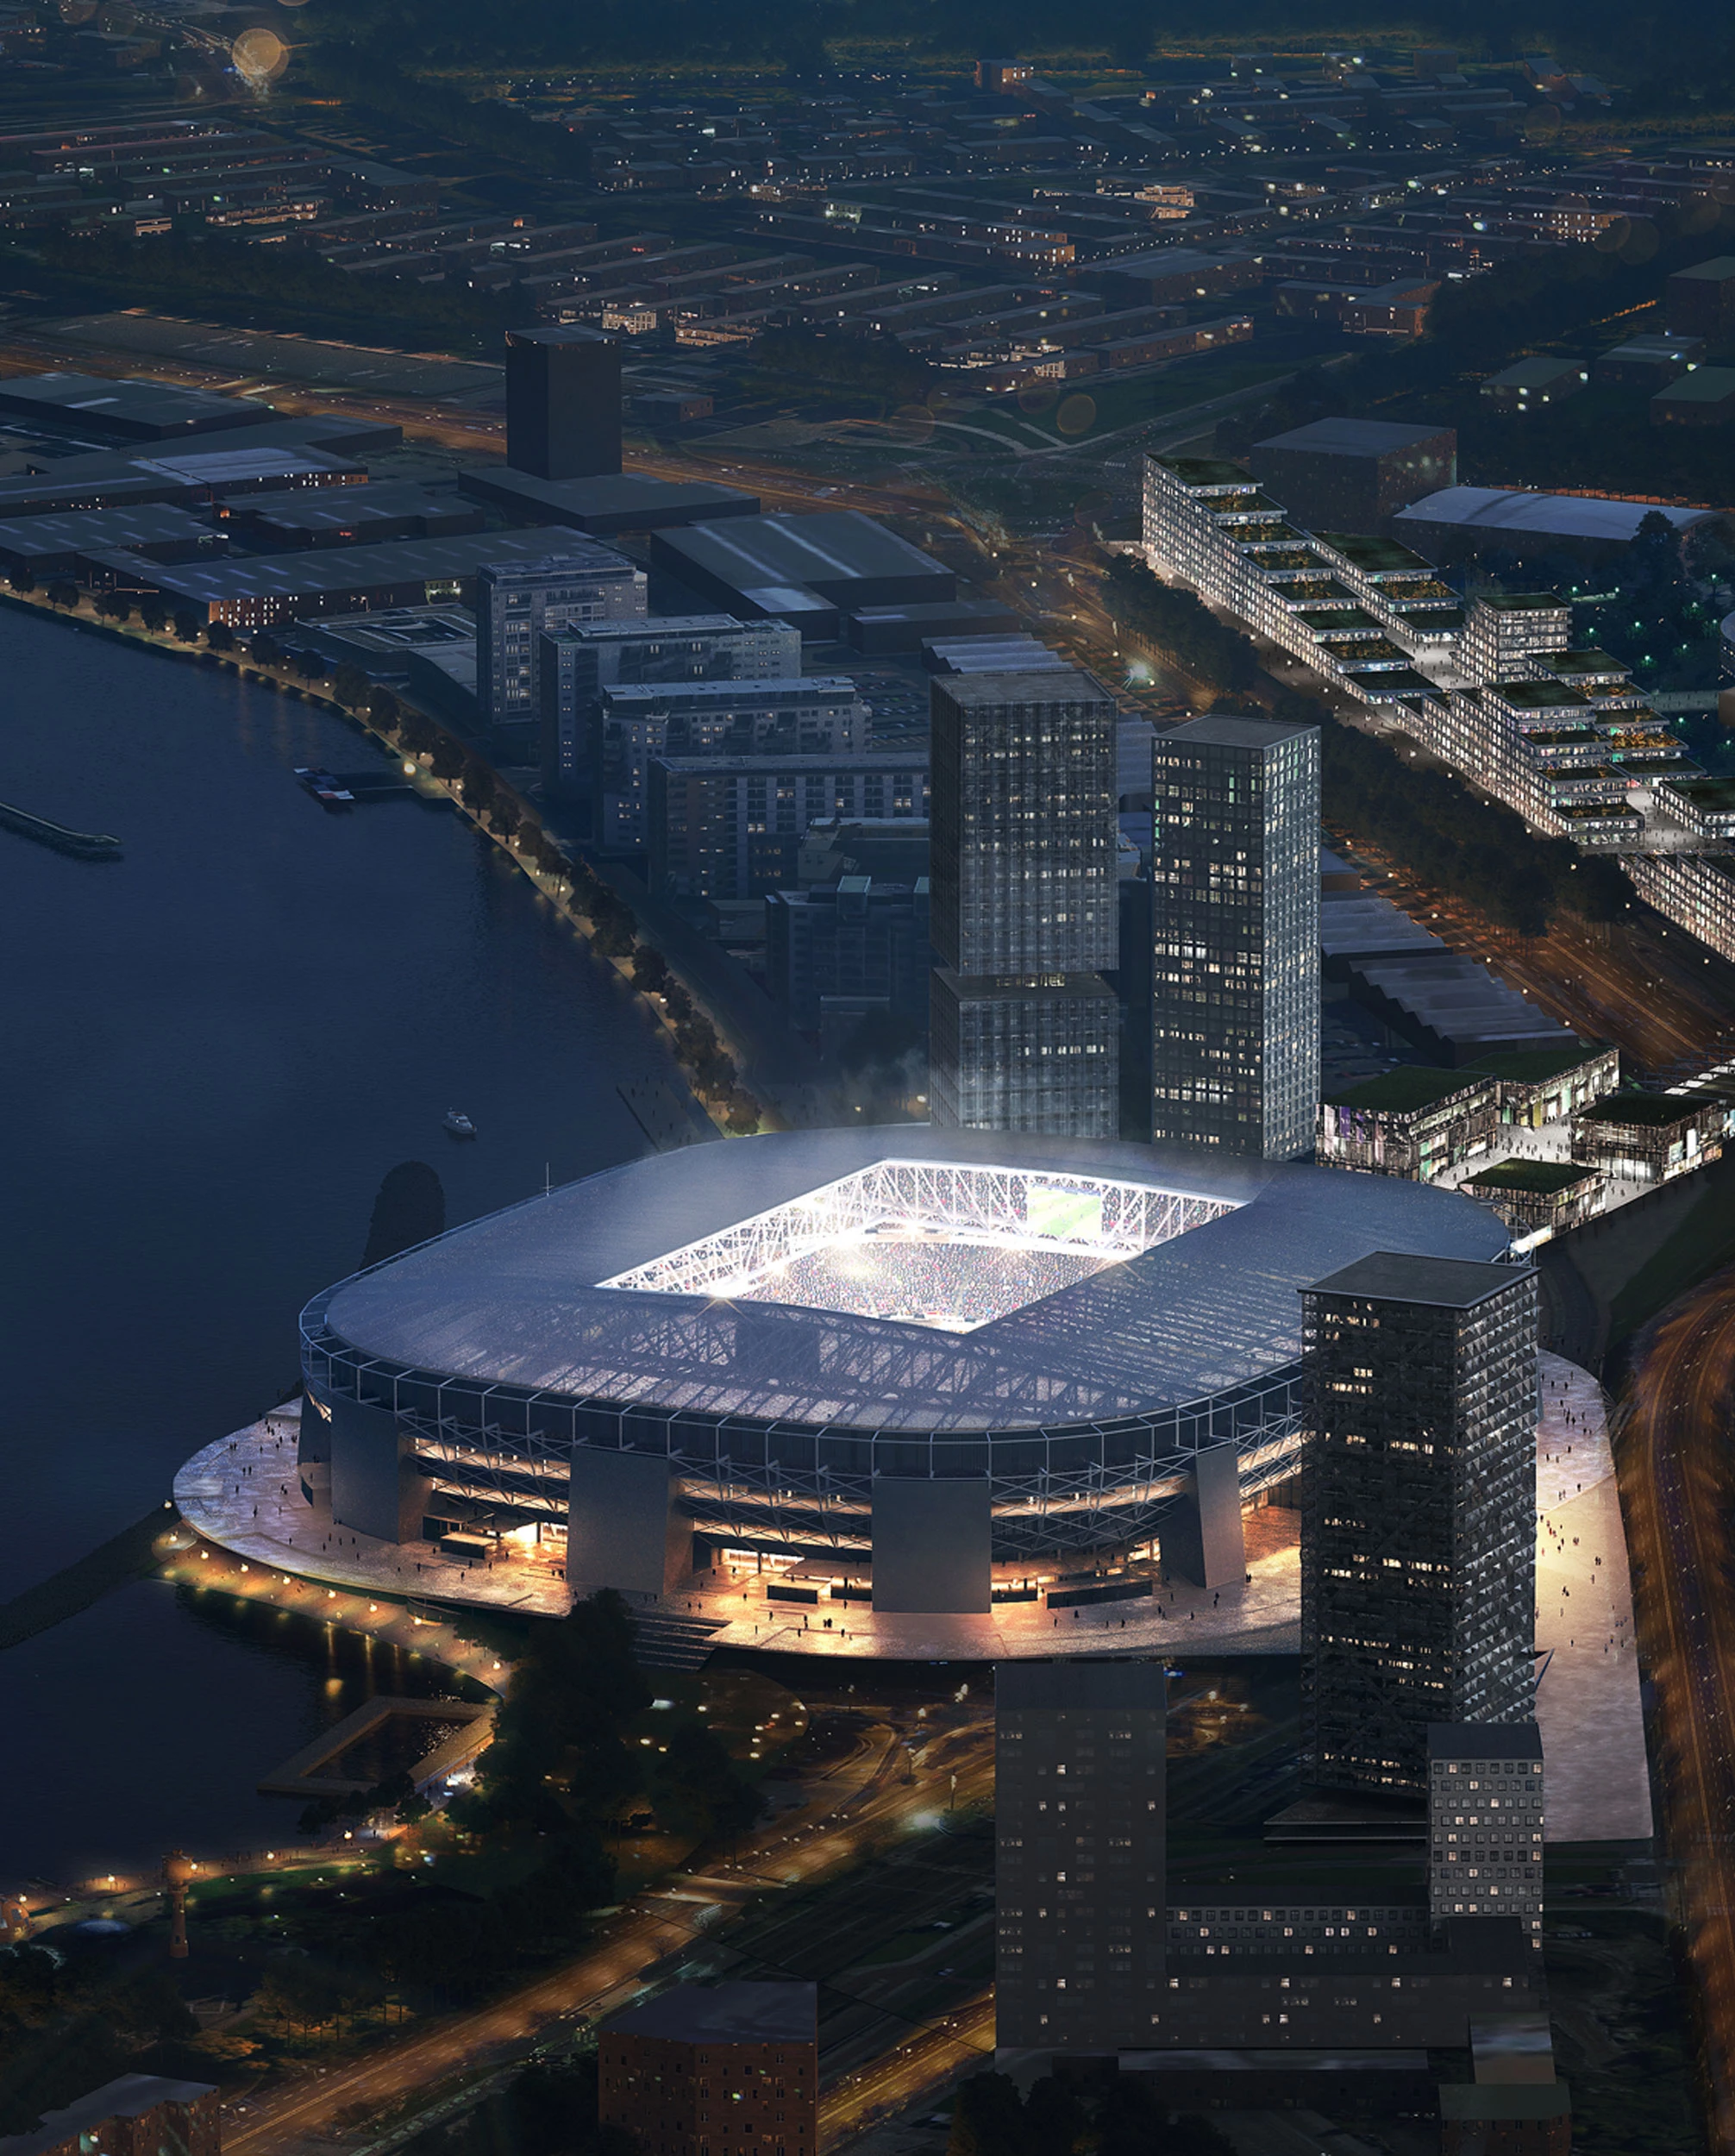 New Feyenoord Stadium in Rotterdam